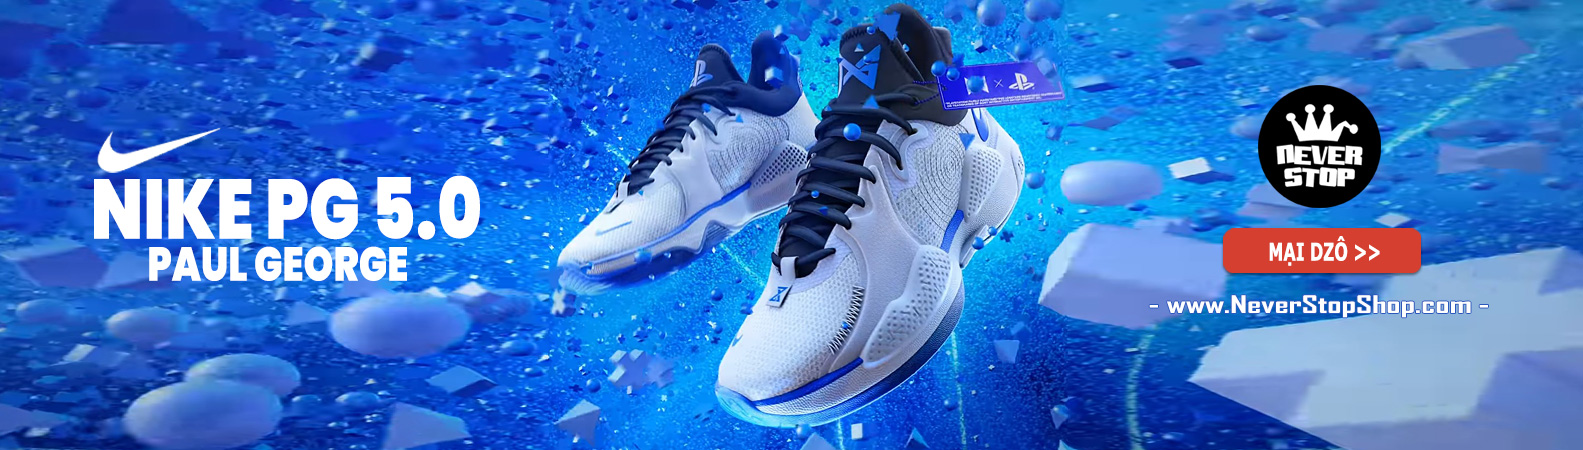 Giày Nike PG 5.0 bóng rổ cổ cao nam sfake replica giá rẻ tốt nhất HCM NeverStopShop